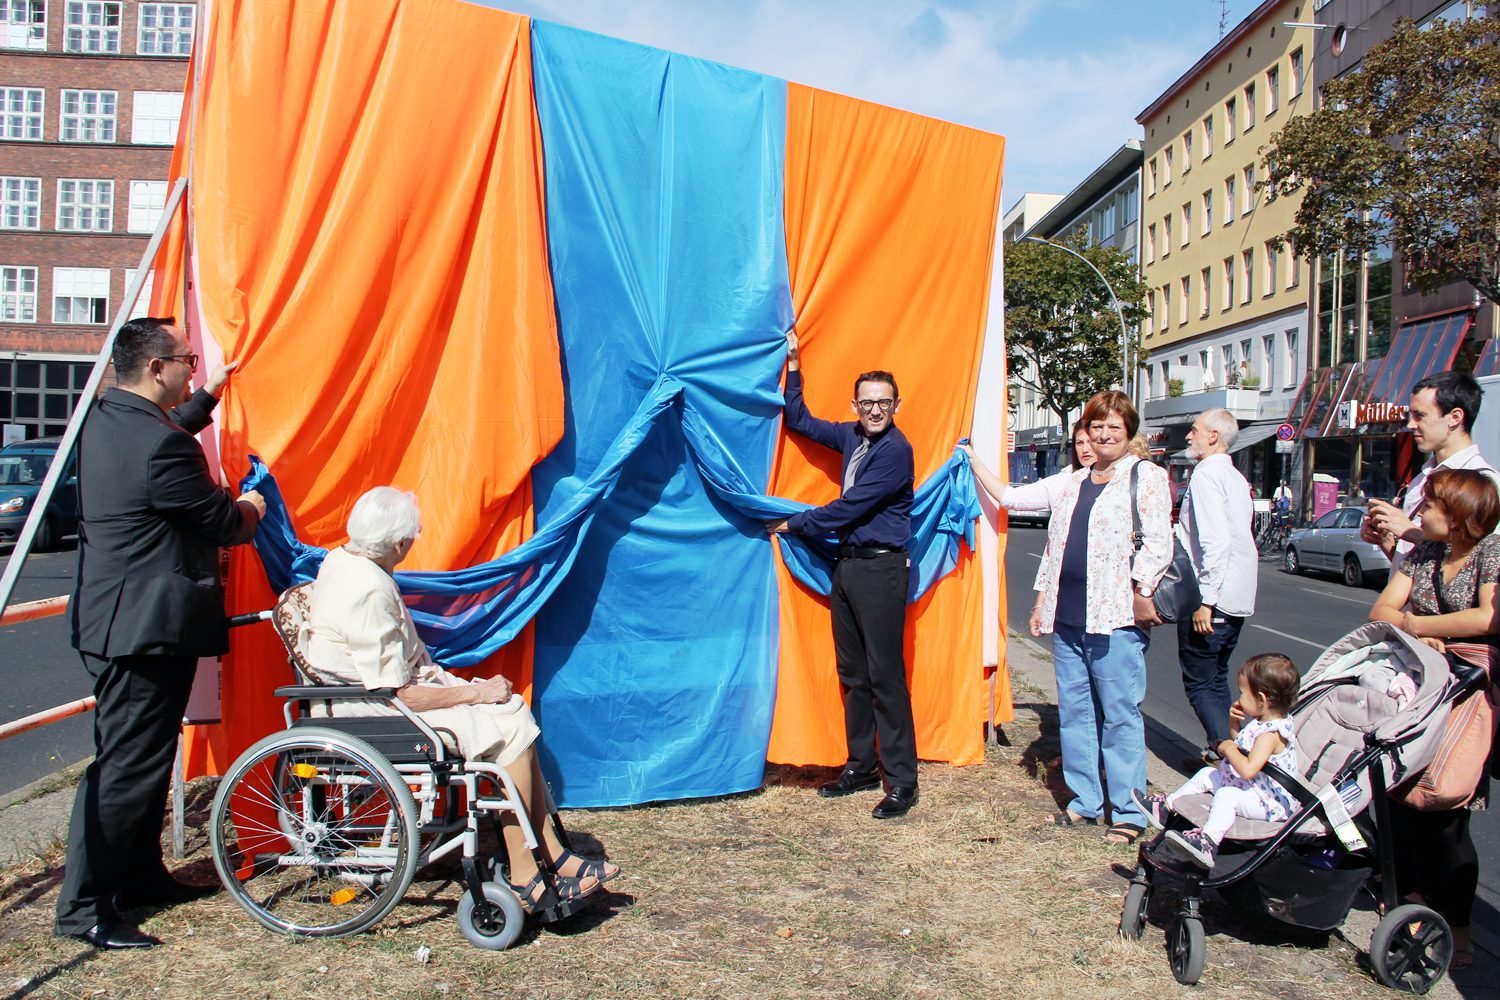 Bezirksbürgermeister Stephan von Dassel enthüllt ein Bild der Ausstellung "Mein Wedding 5". Foto: D. Hensel